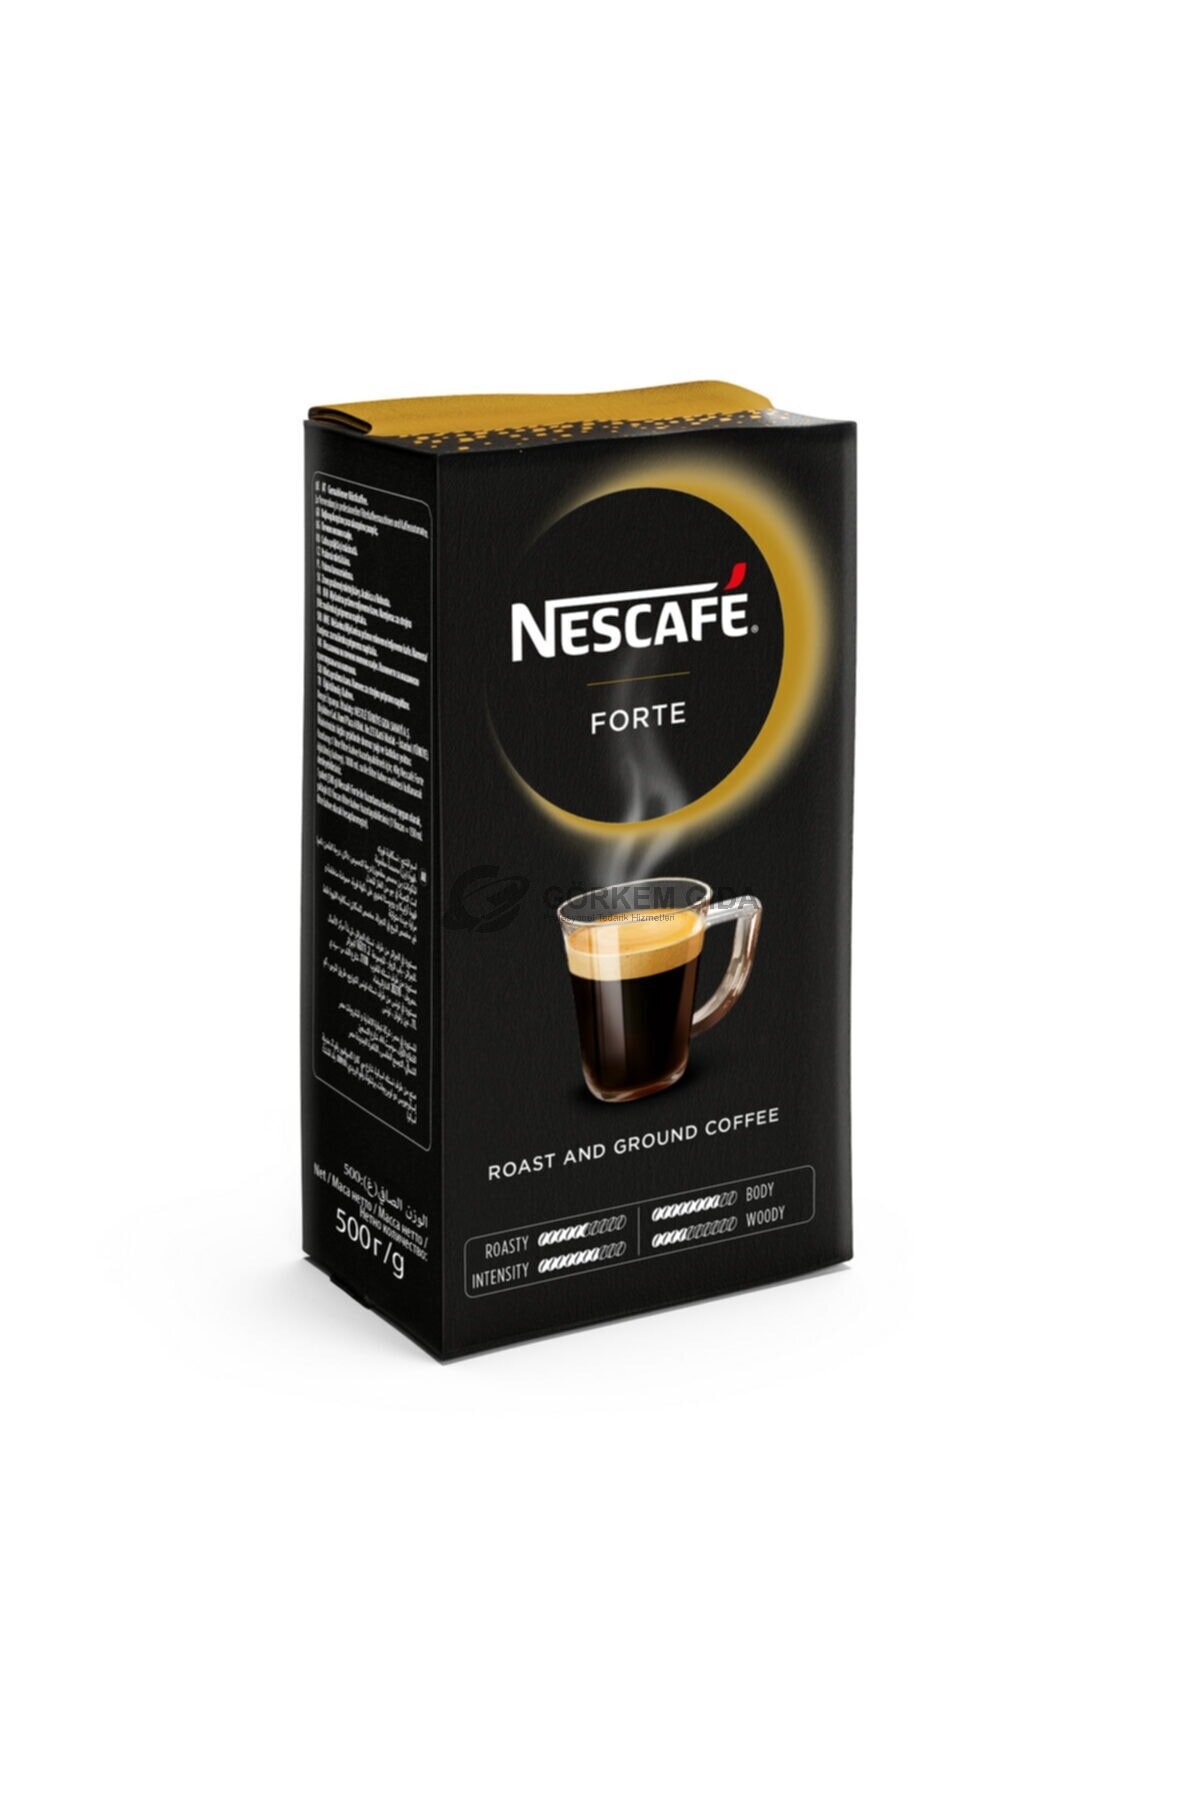 Nescafe%20Forte%20Filtre%20Kahve%20500%20GR.